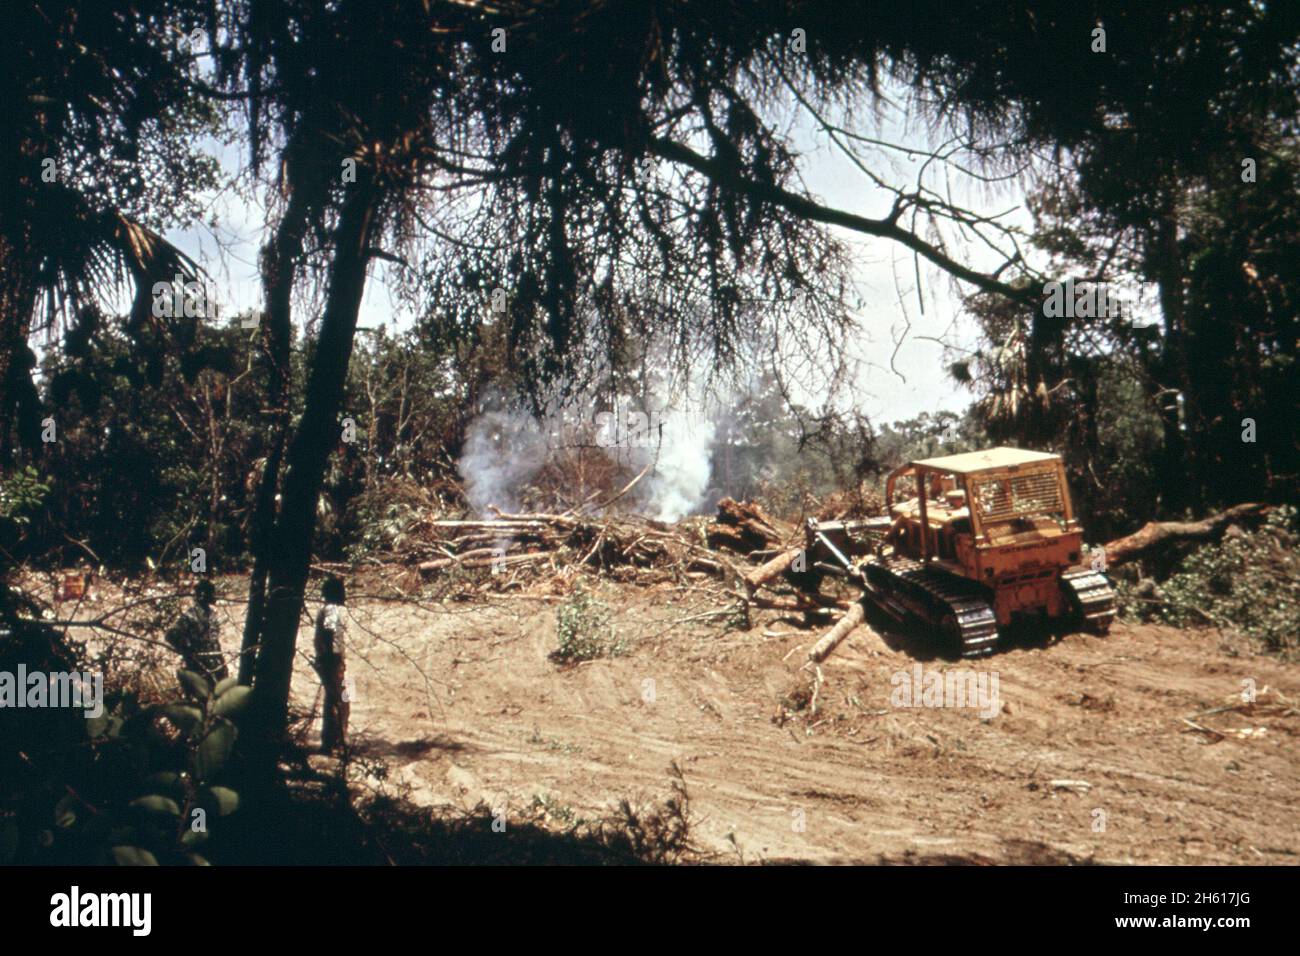 'Abulldozer räumt einen Wald und macht Platz für einen Golfplatz auf John's Island, (Teil der seabrook Inselentwicklung) ca. Mai 1973' Stockfoto